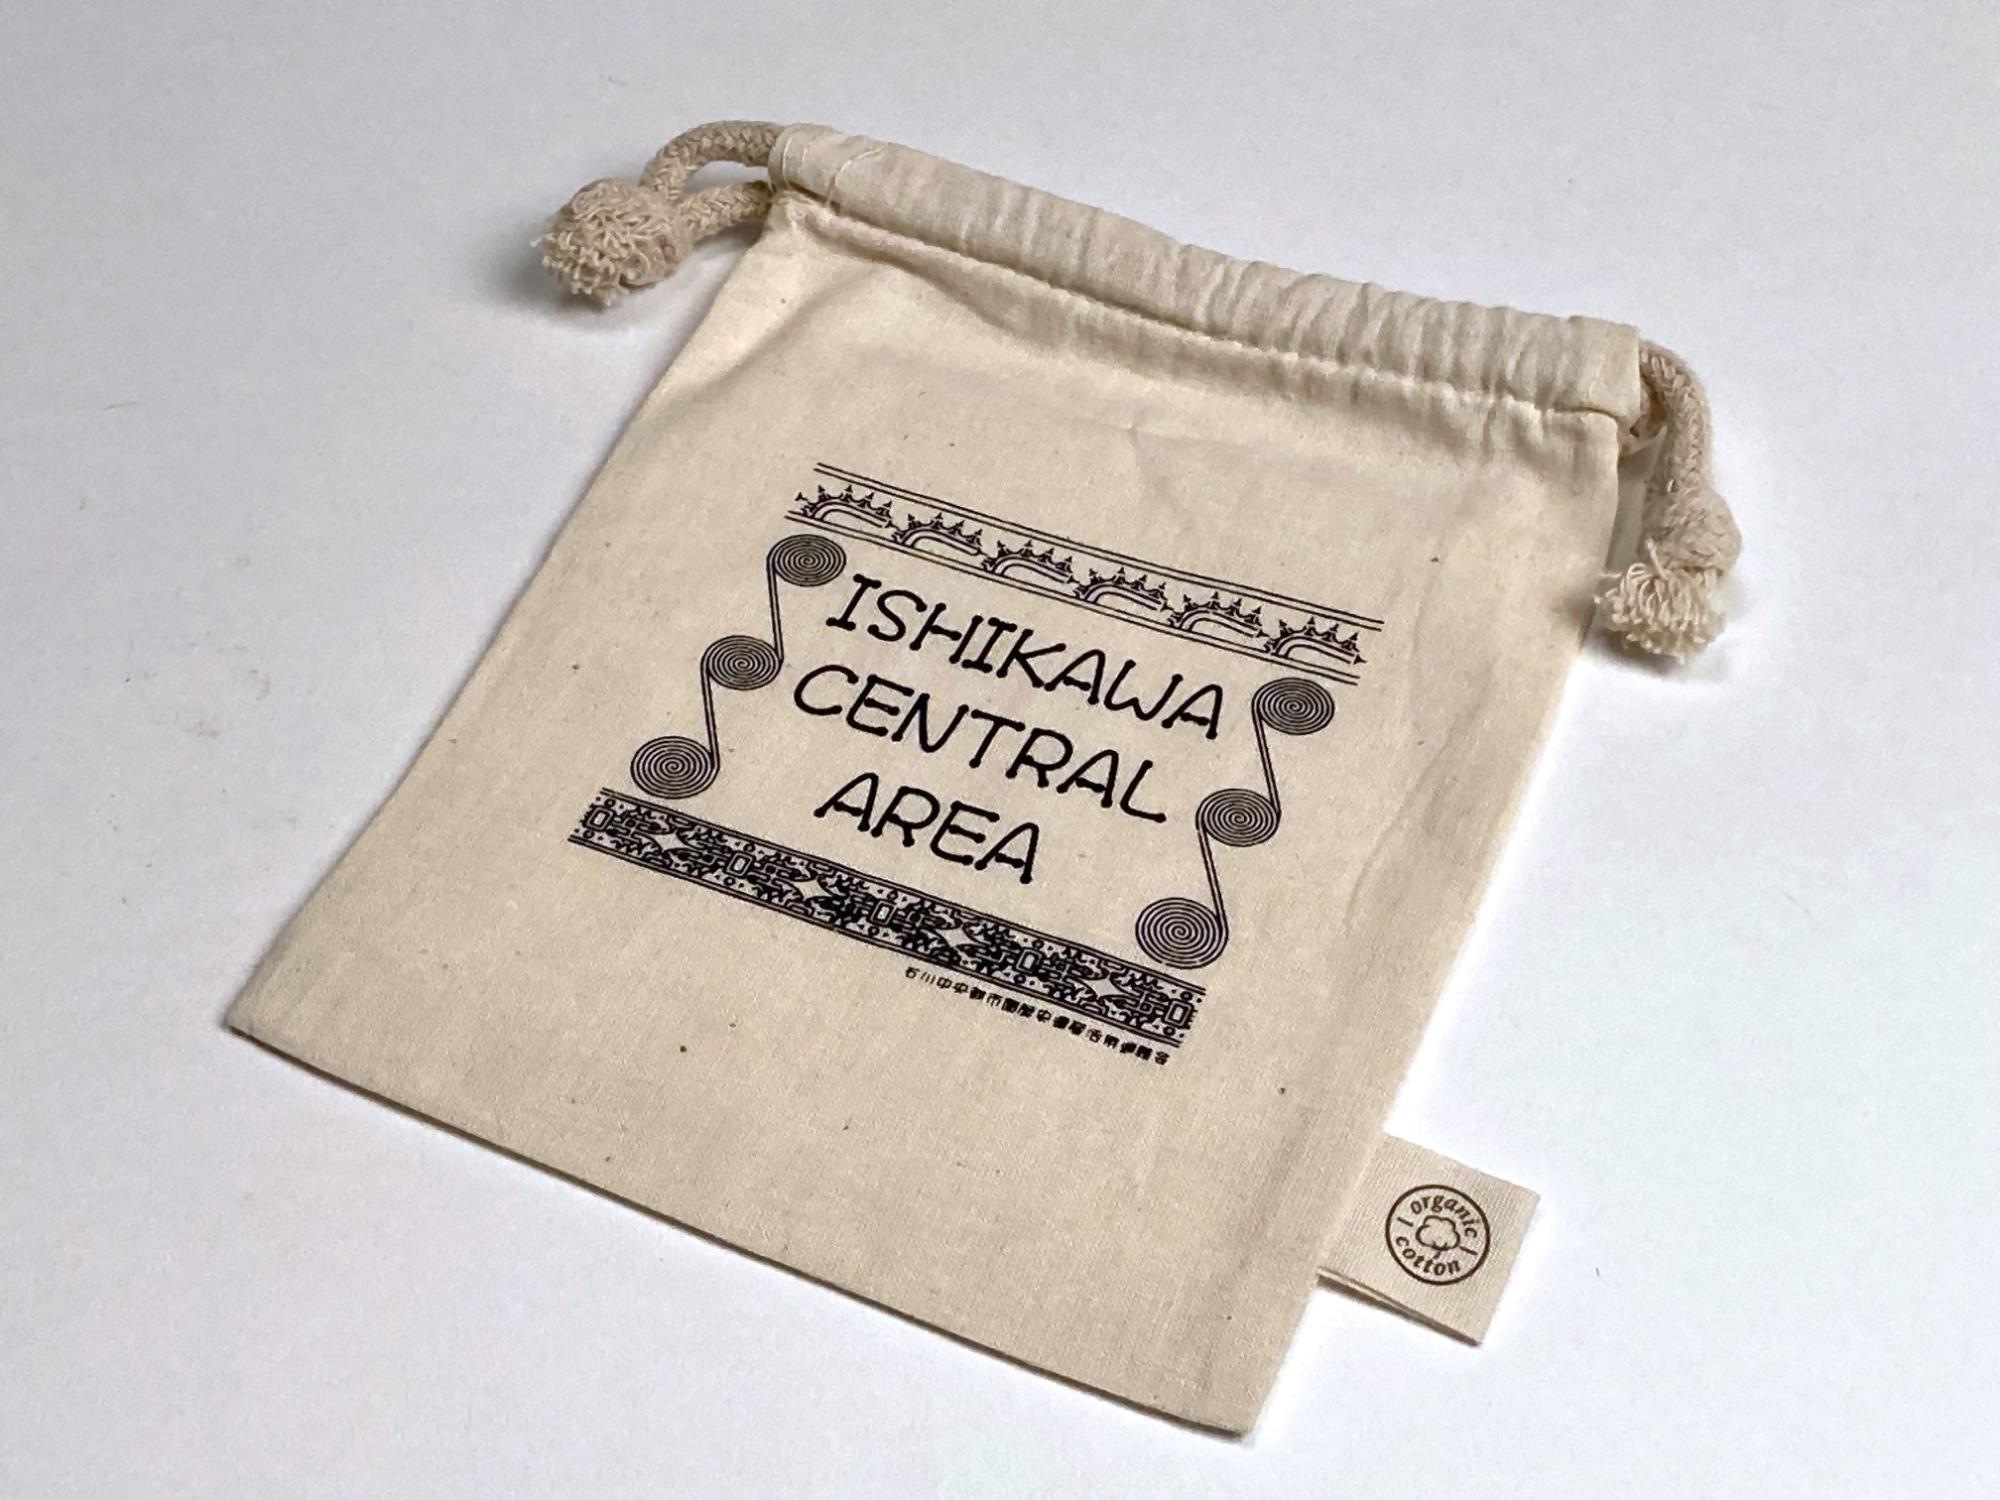 石川中央都市圏のロゴが入ったオリジナル巾着袋の写真